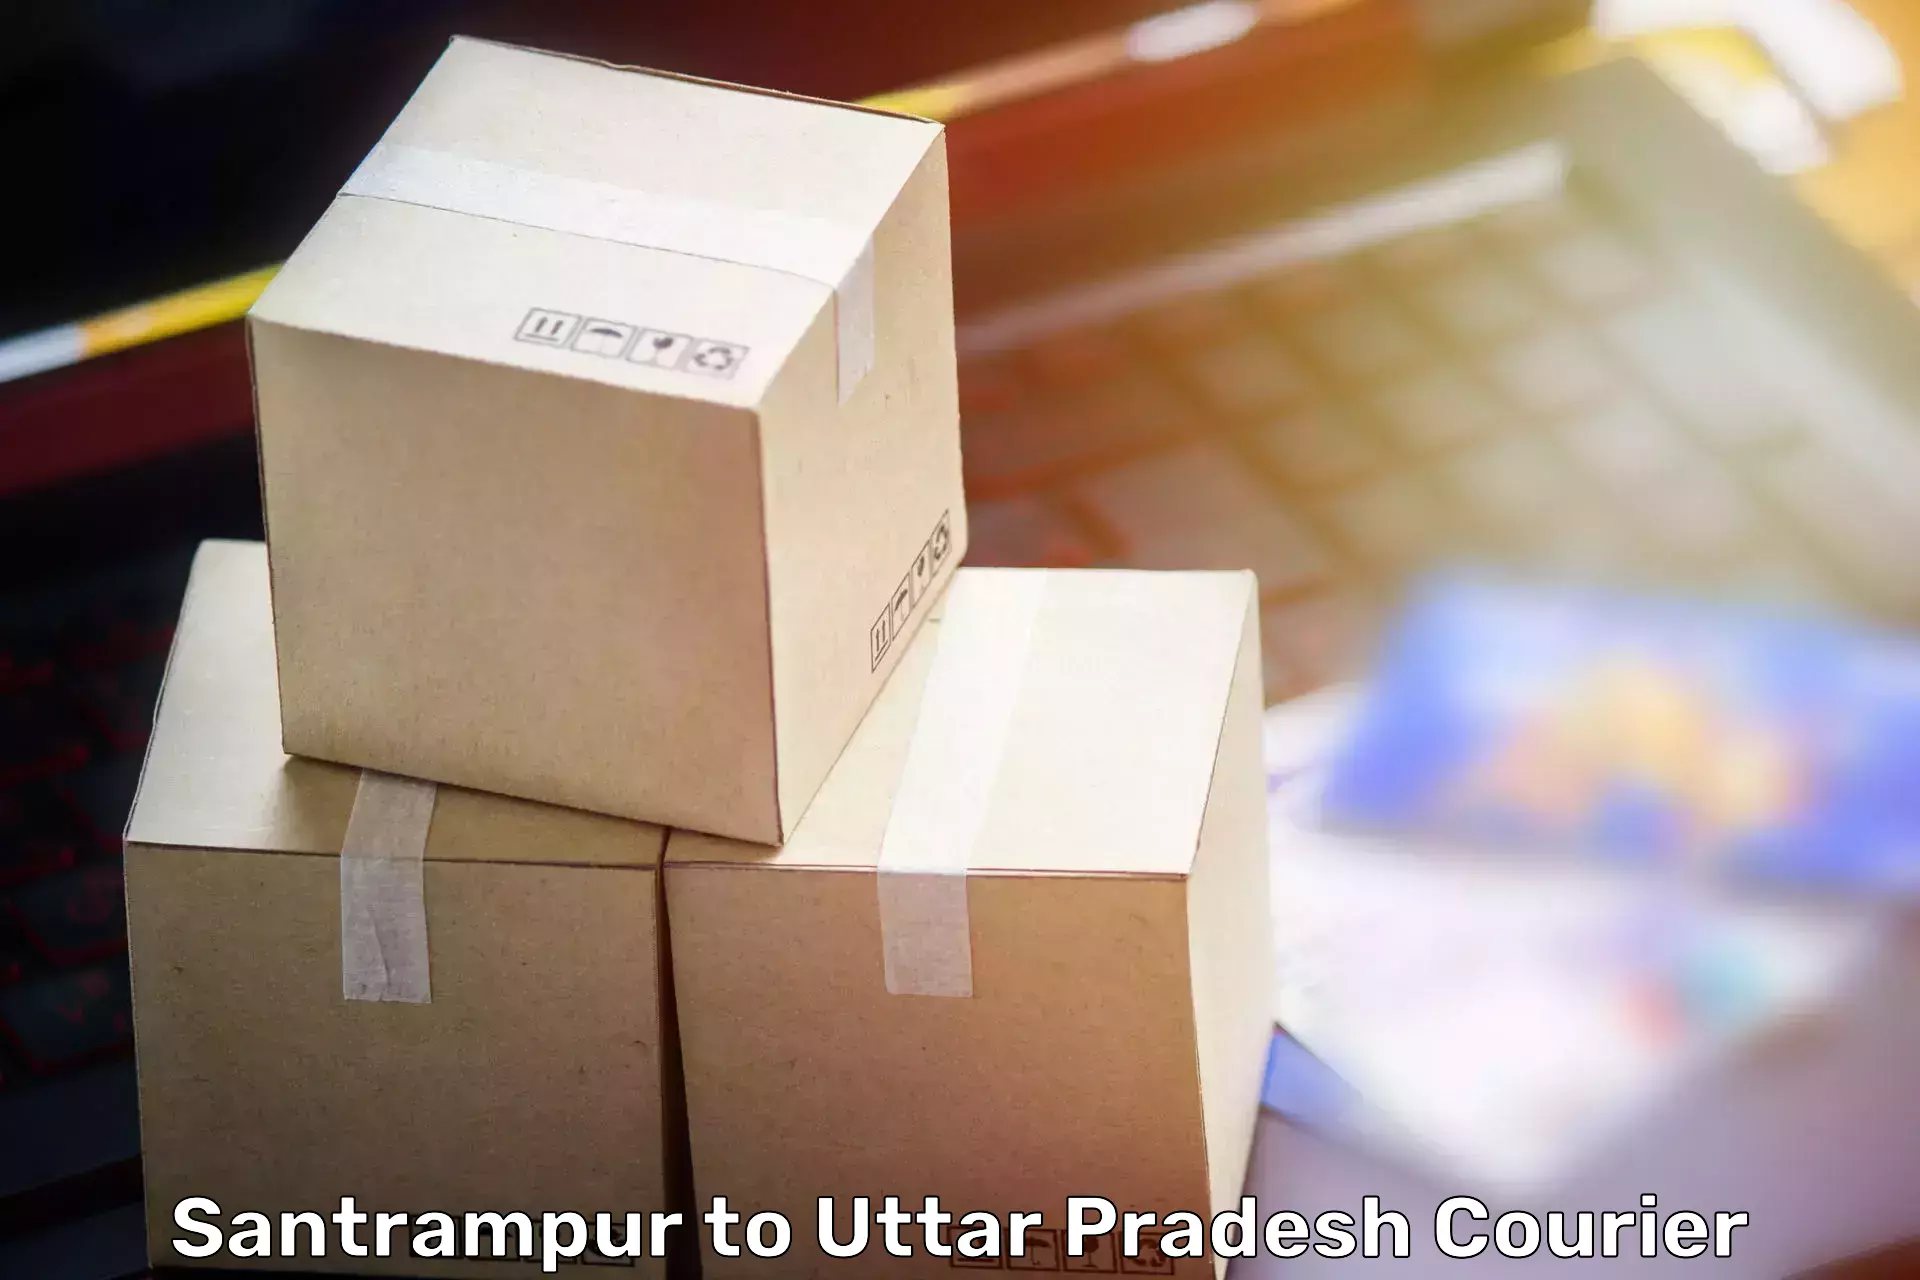 Furniture relocation experts Santrampur to Kurebhar